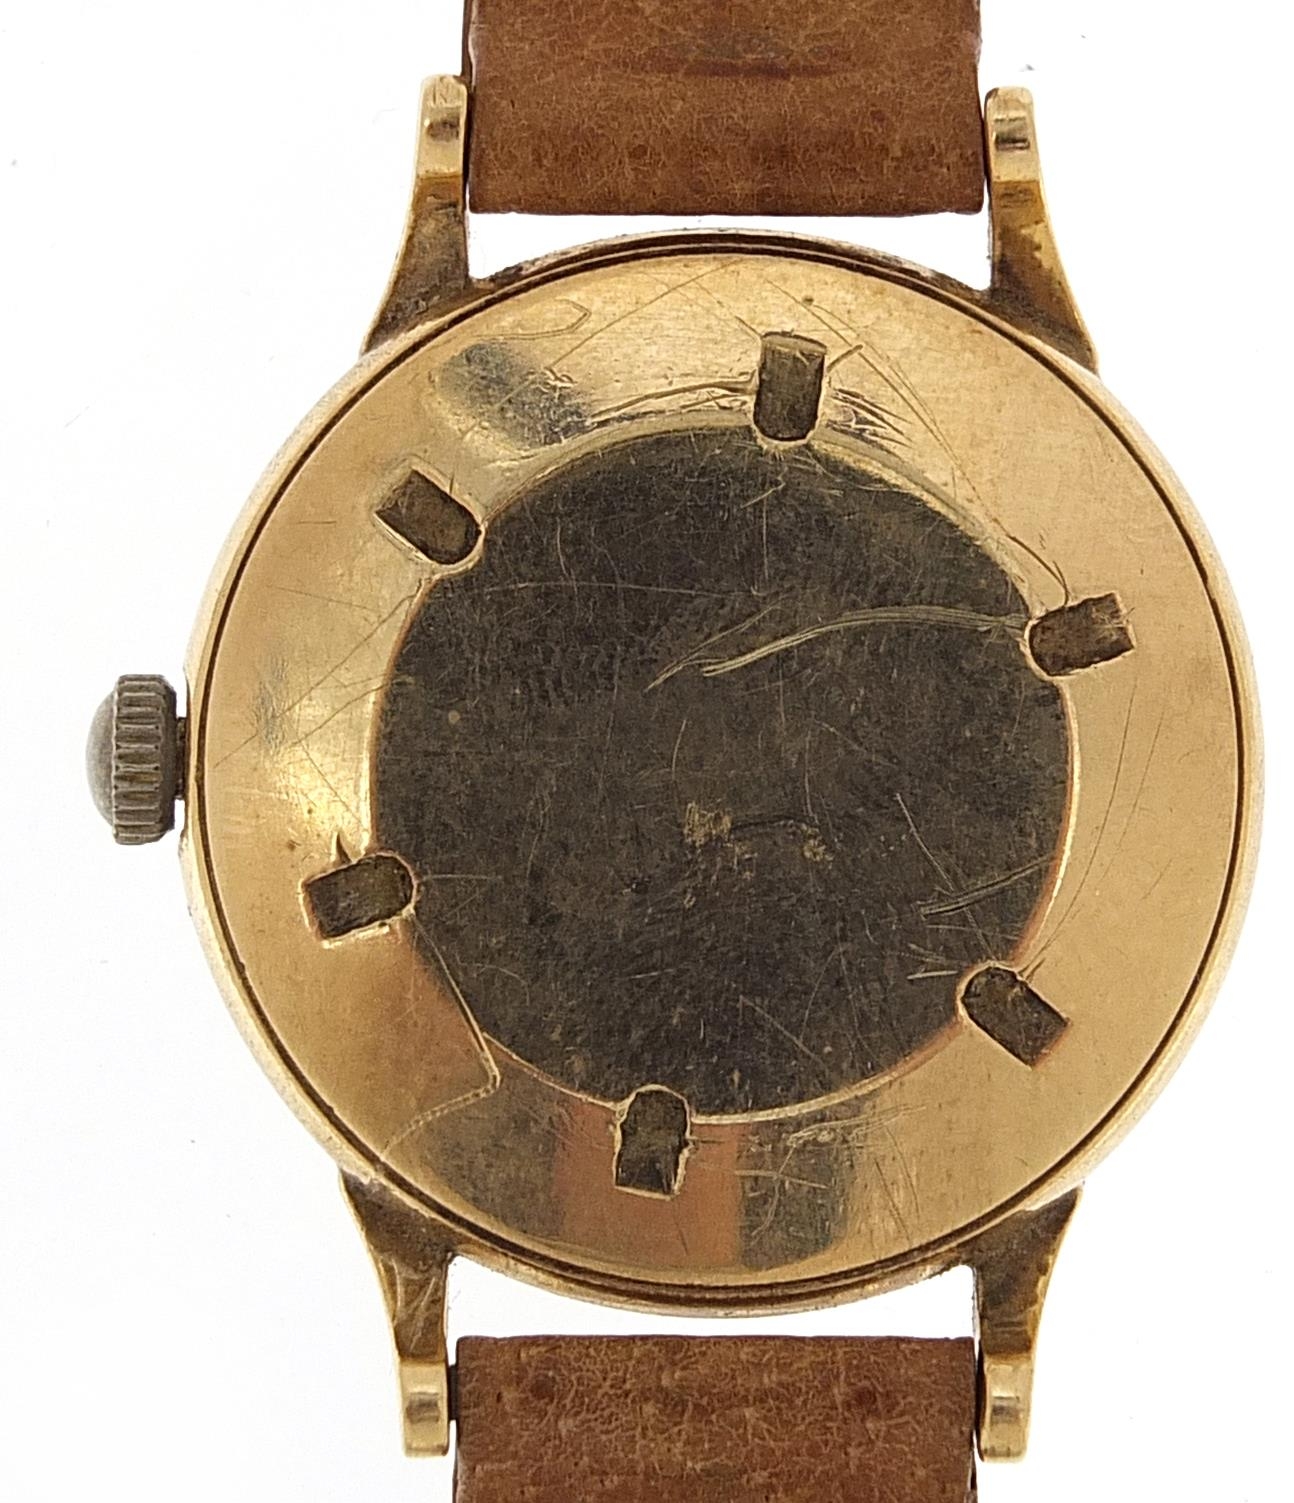 Baume, vintage gentlemen's gold wristwatch, 32mm in diameter - Image 3 of 4